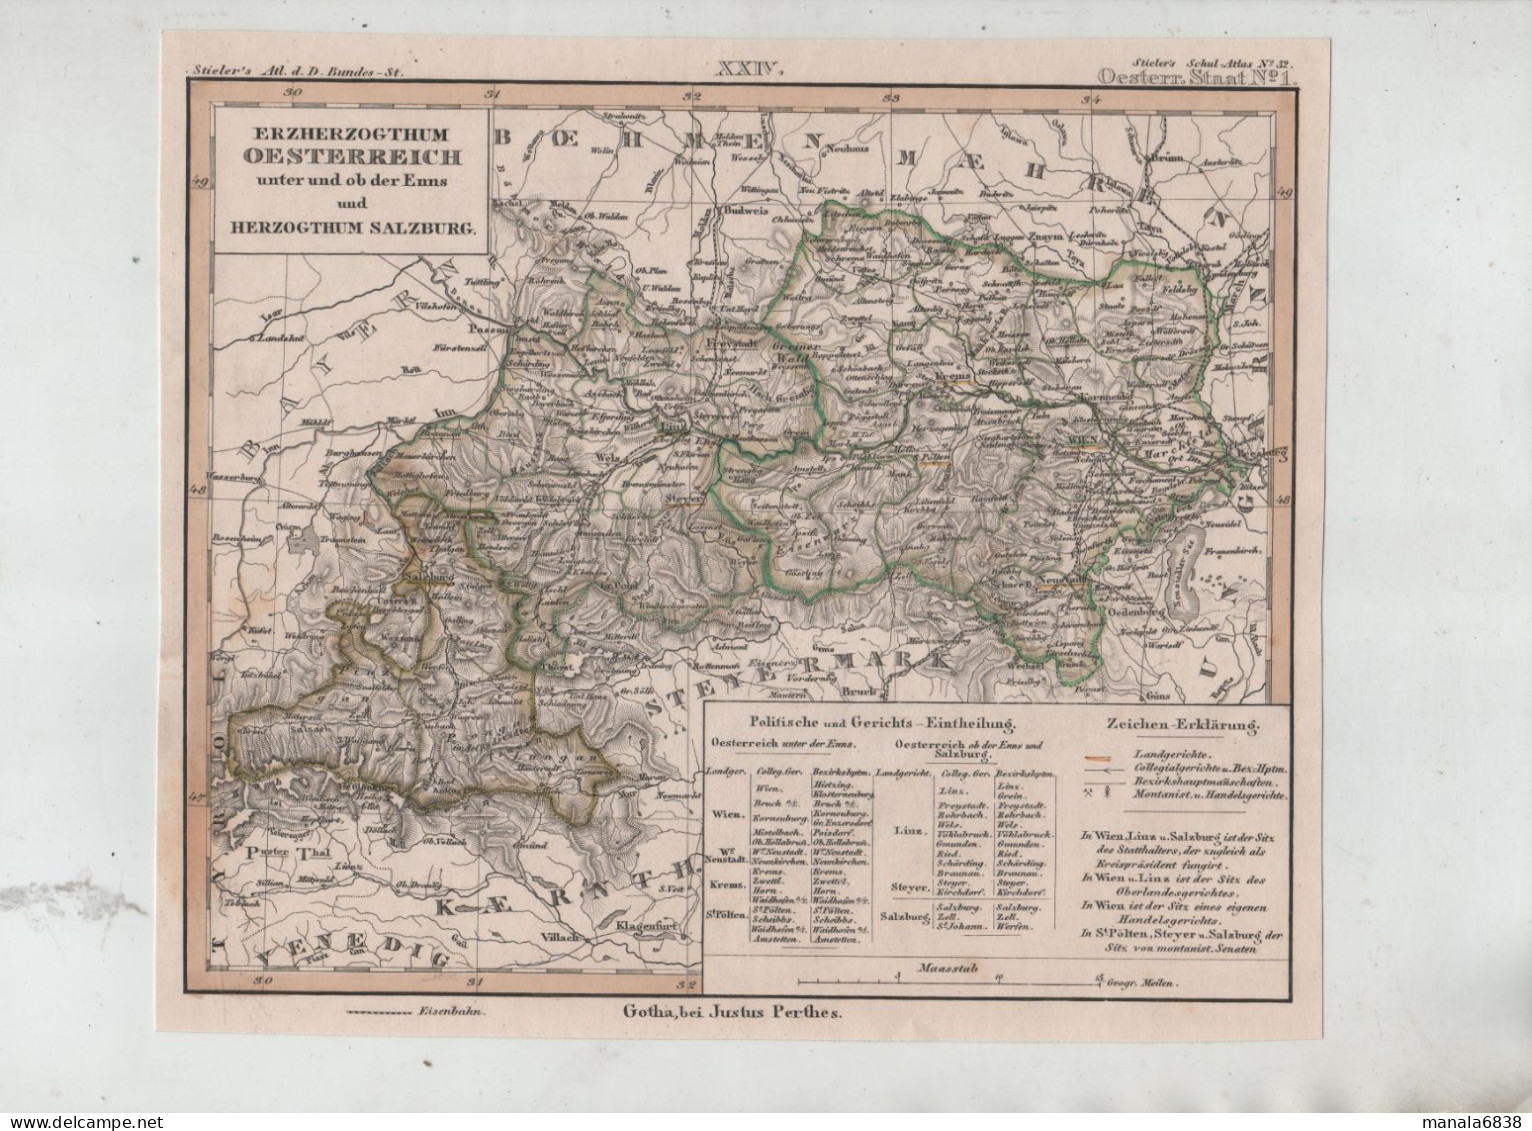 Erzherzogthum Oesterreich Unter Und Ob Der Enns Und Herzogthum Salzburg Gotha Bei Justus Perthes - Landkarten